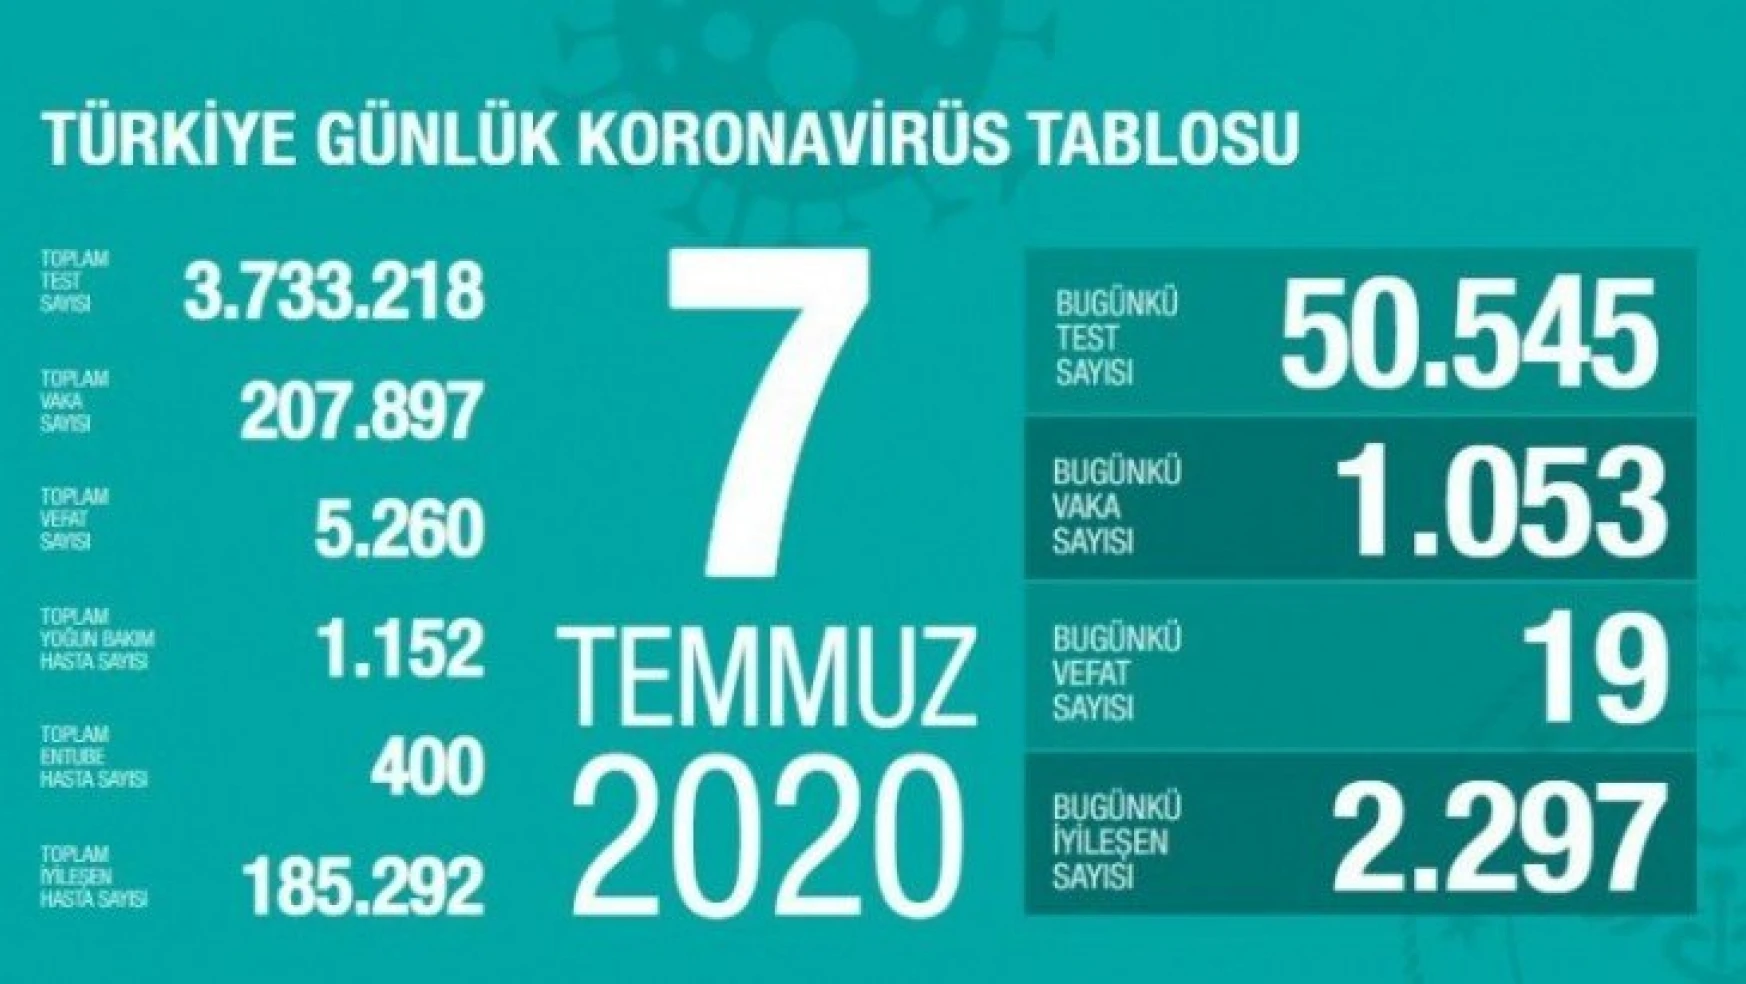 Türkiye'de son 24 saatte 1053 kişiye Kovid-19 tanısı konuldu